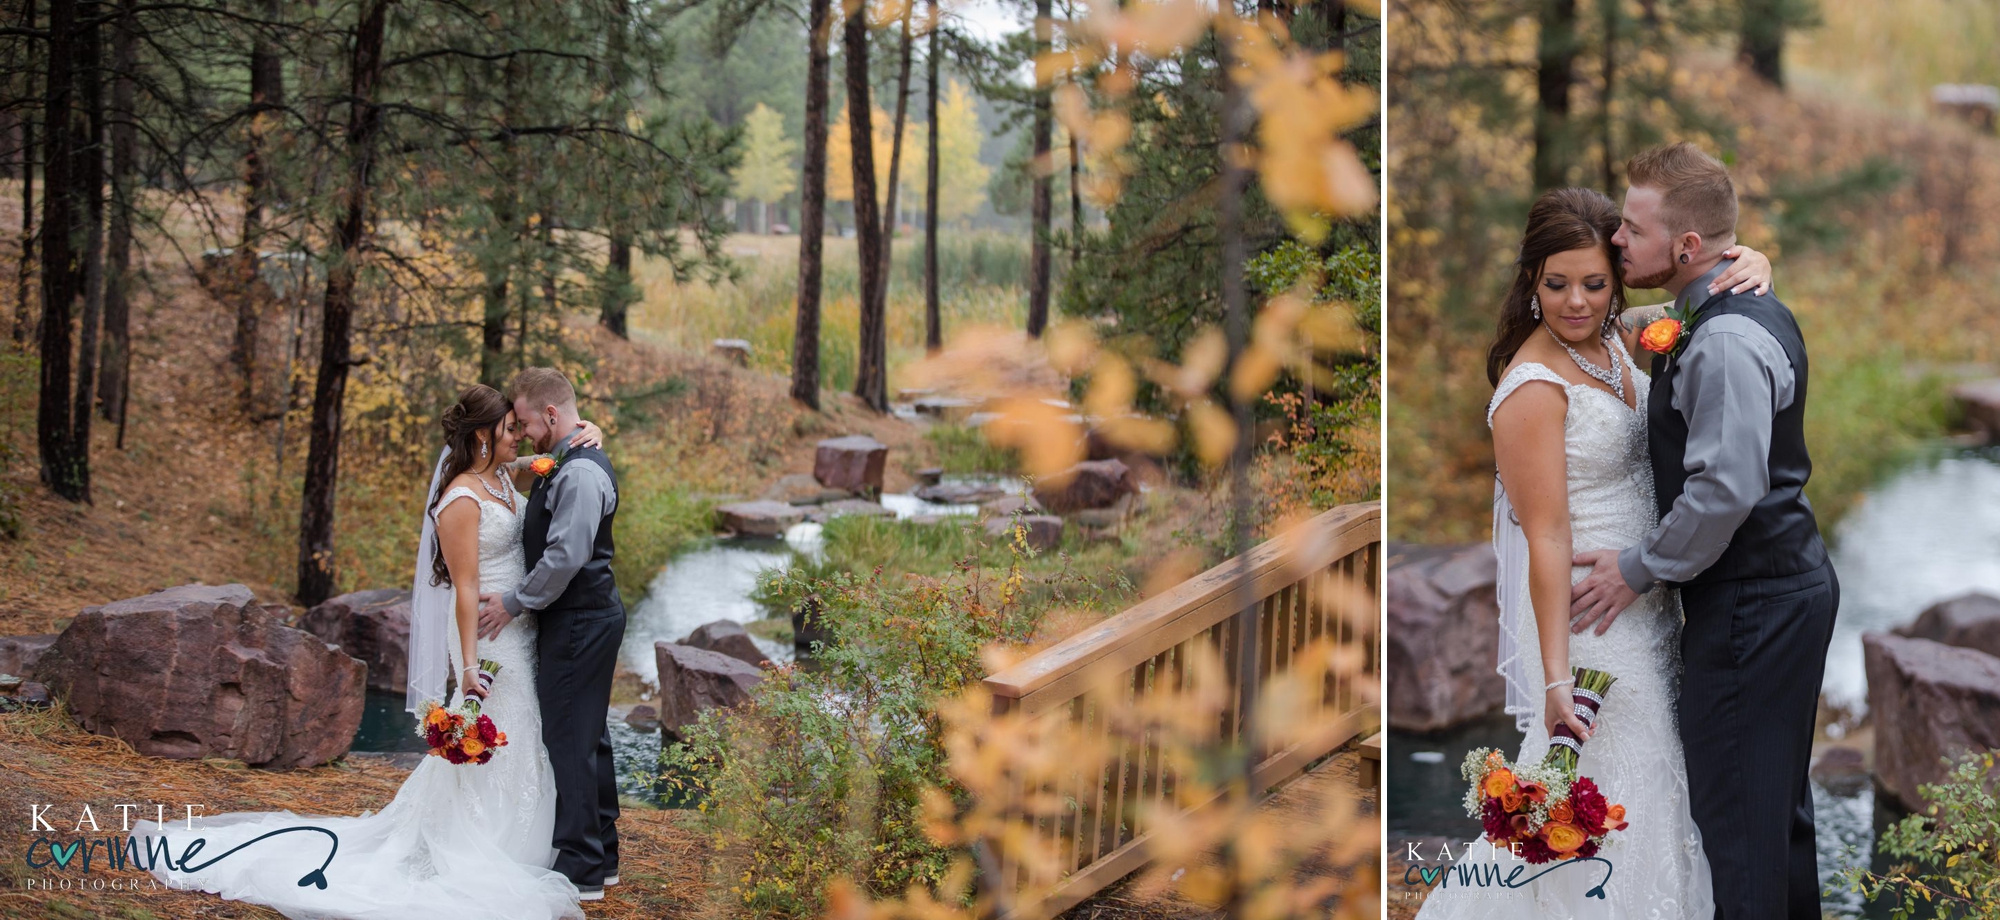 Fall wedding portraits in Colorado springs